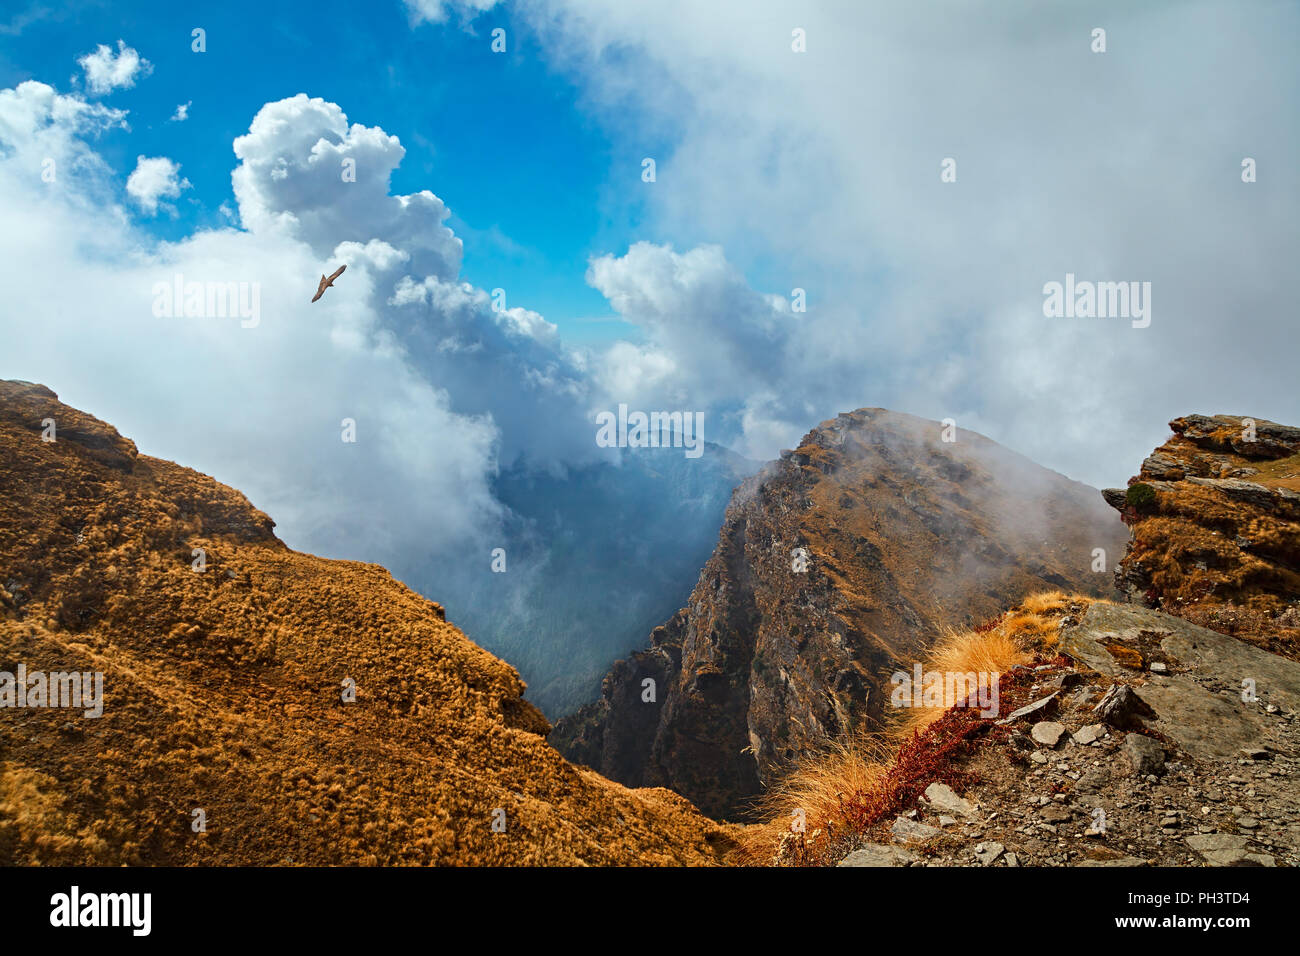 Vista aérea de las montañas con nubes y un águila volando. Vista desde una ladera del monte Chandrashila, Himalaya, Uttarakhand, India Foto de stock